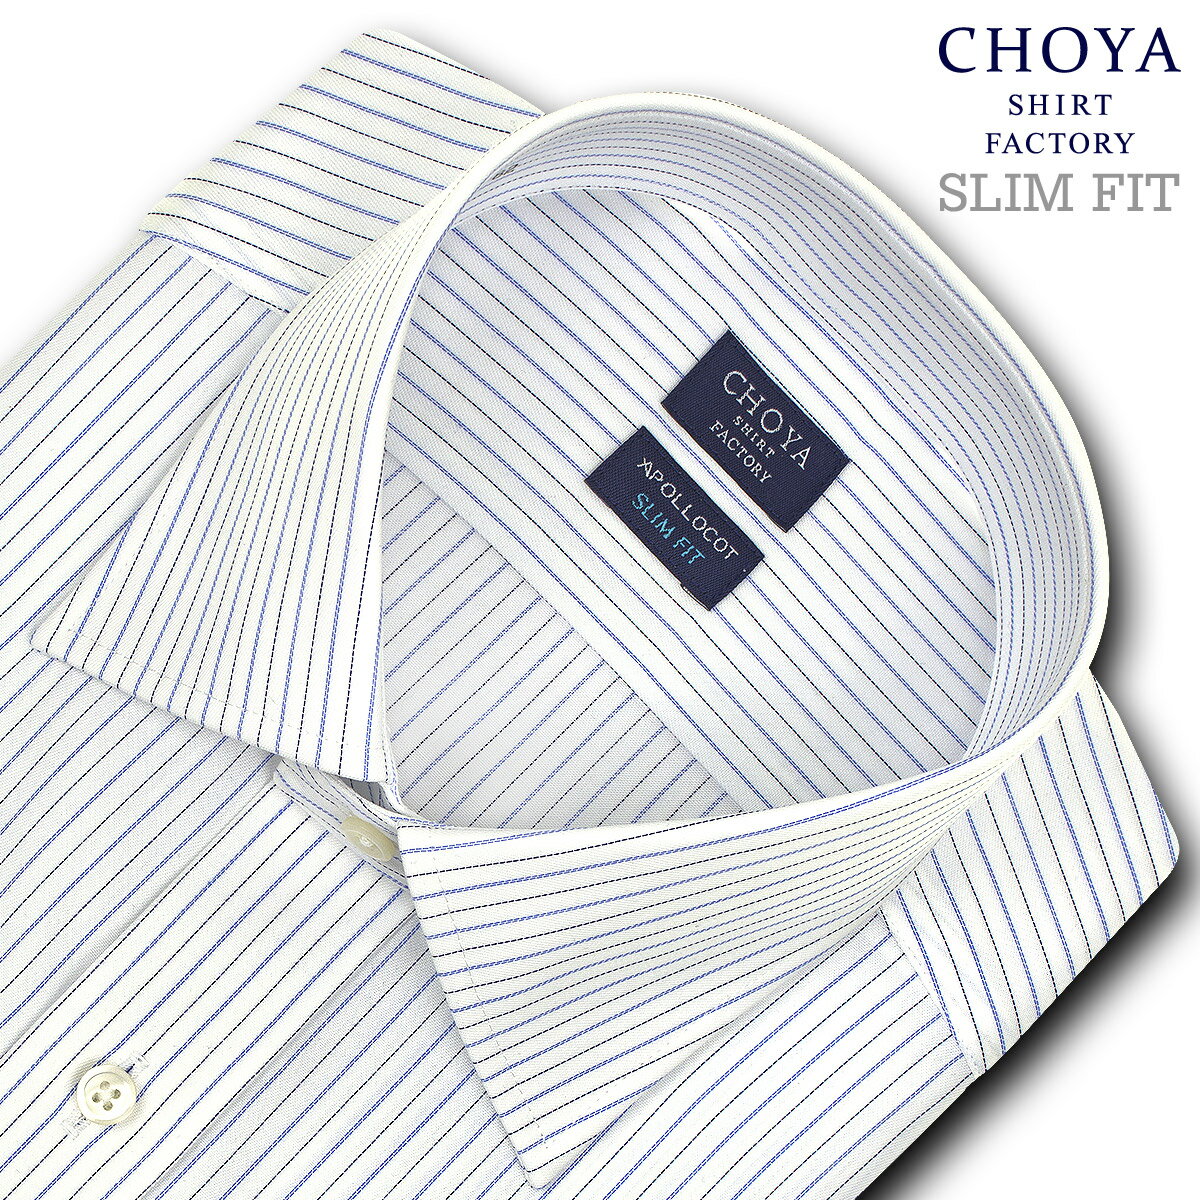 Yシャツ スリムフィット 日清紡アポロコット 長袖 ワイシャツ メンズ 形態安定 ブルーピンストライプ ワイドカラー 綿100 ブルー CHOYA SHIRT FACTORY(cfd942-450) (sa1)